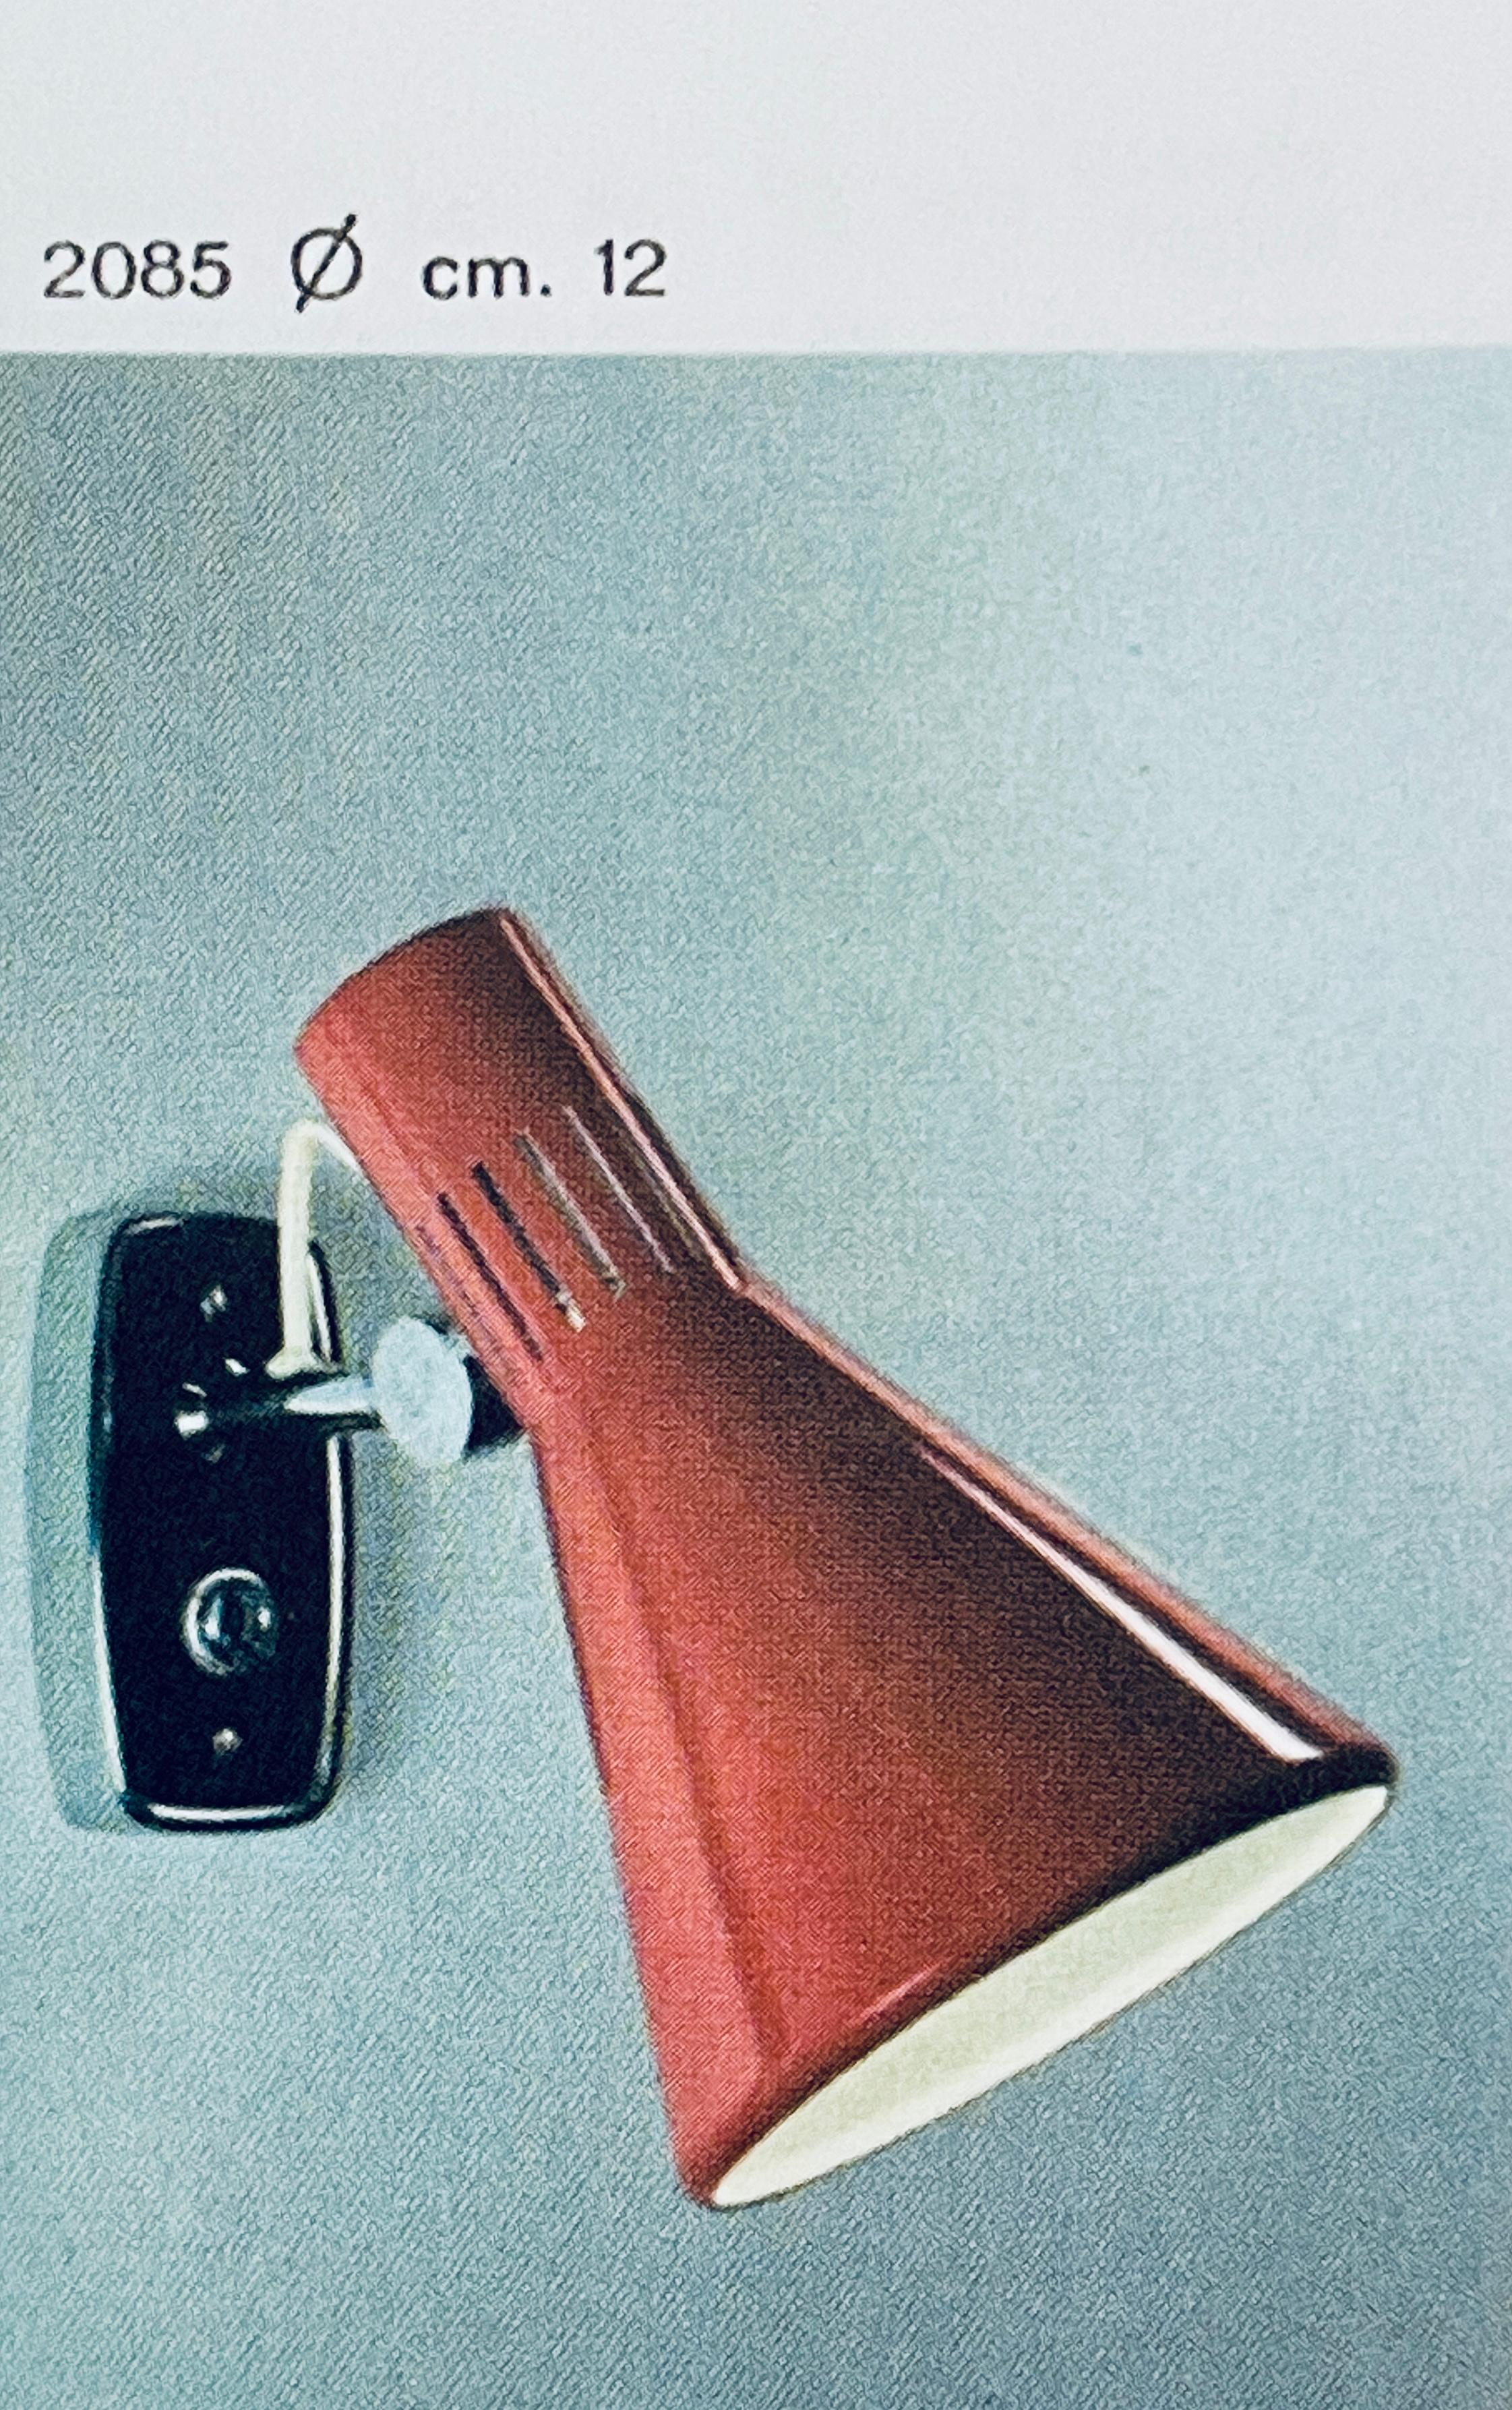 lampe murale articulée Stilnovo Modèle #2085 des années 1960 avec étiquette jaune d'origine. Un design typiquement italien des années 1960 exécuté en métal peint en rouge avec une plaque arrière italienne modifiée pour le montage sur une boîte de